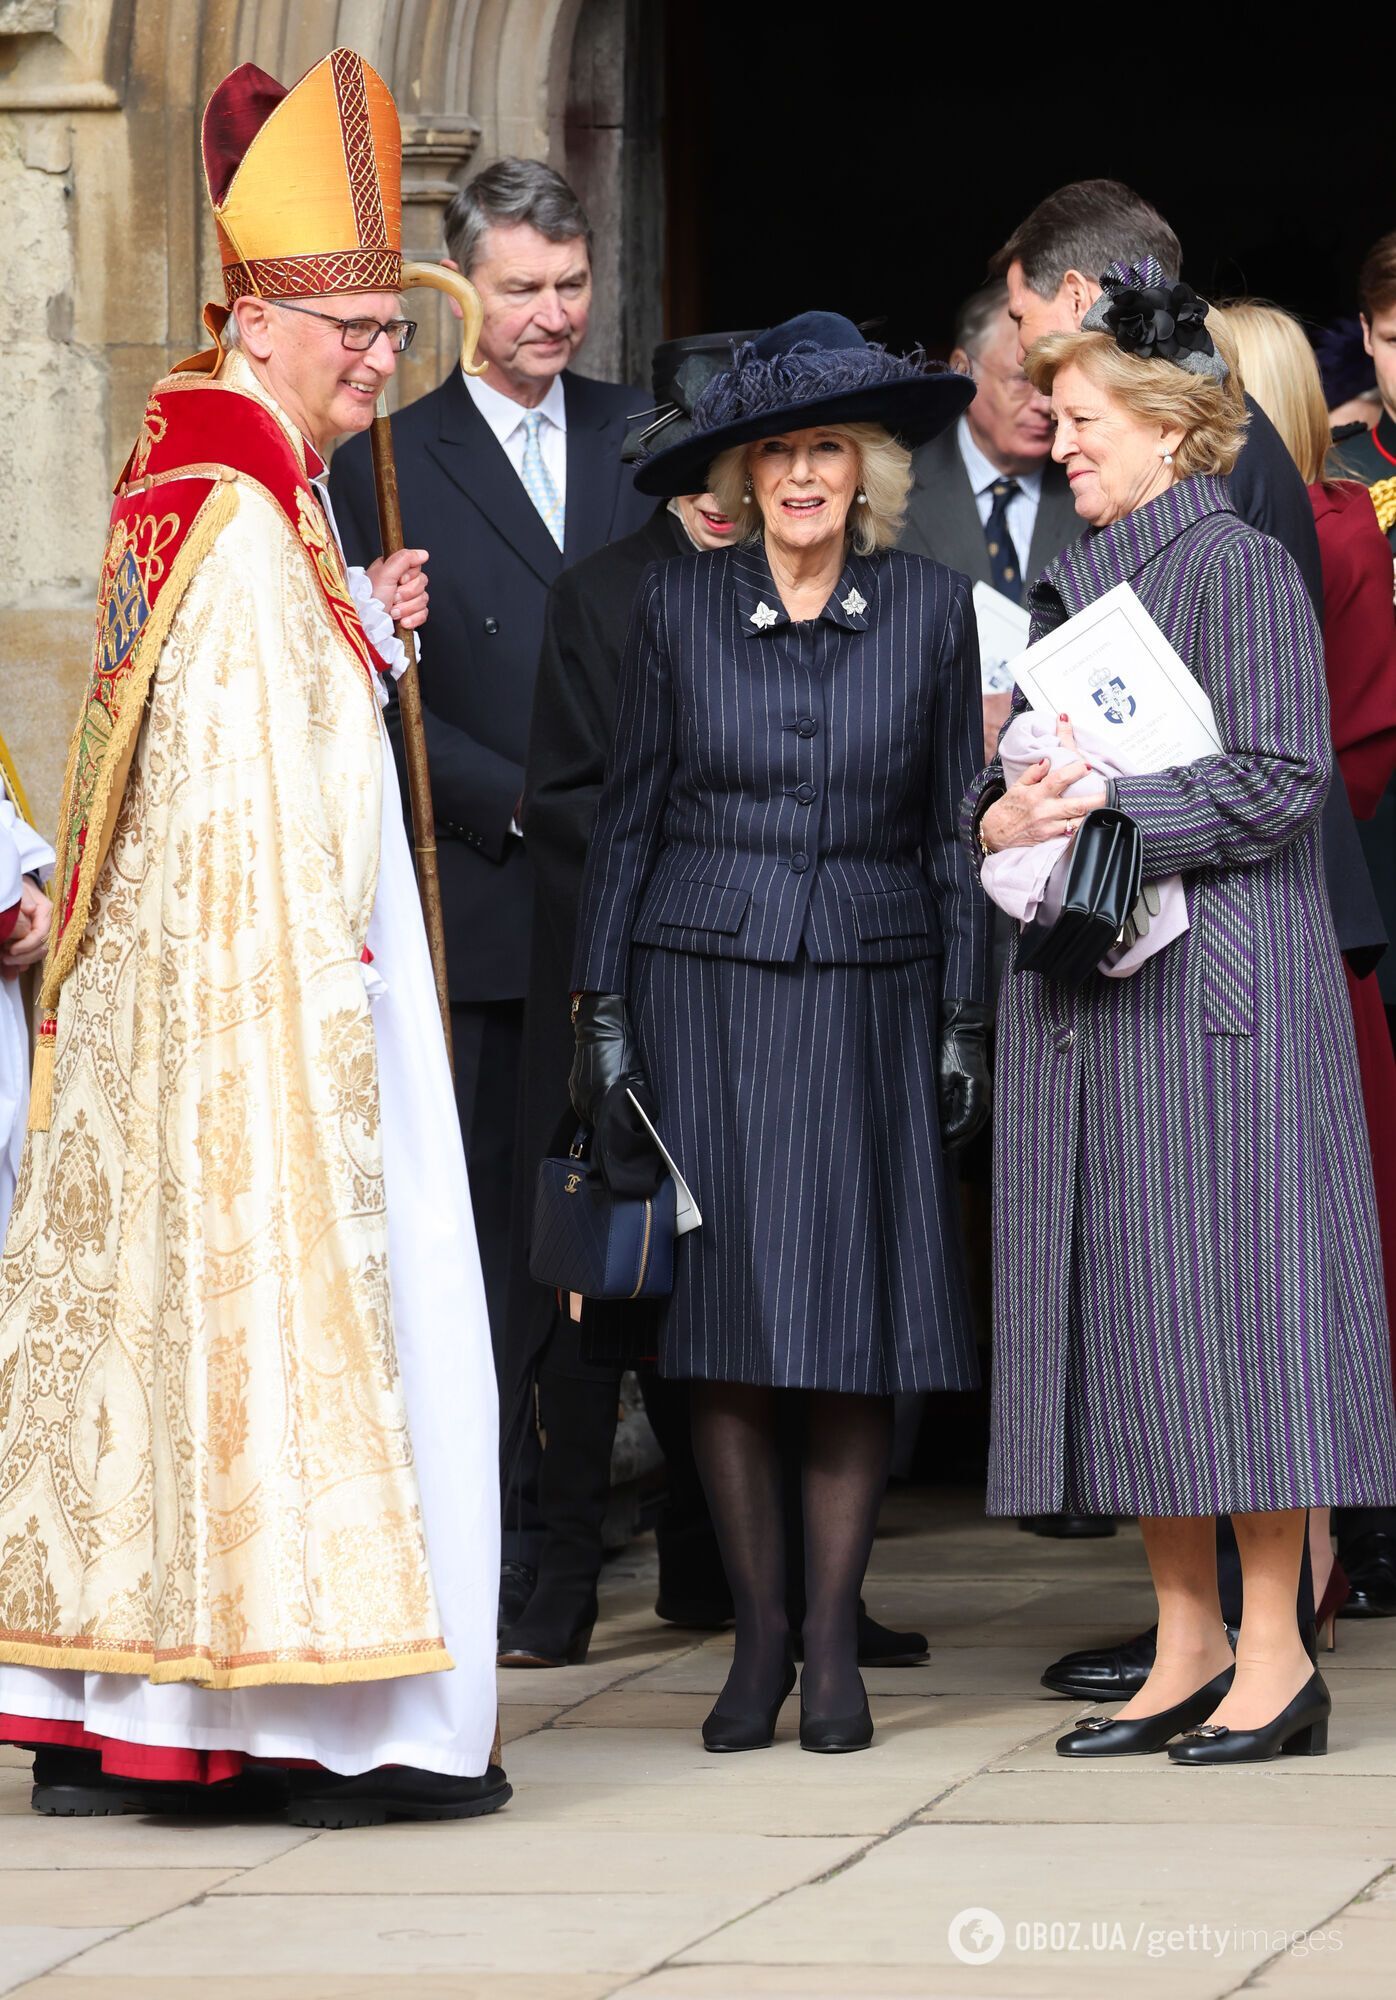 Принц Уильям в последнюю минуту отказался от участия в важном мероприятии из-за "личного": в СМИ поползли слухи о состоянии здоровья Кейт Миддлтон